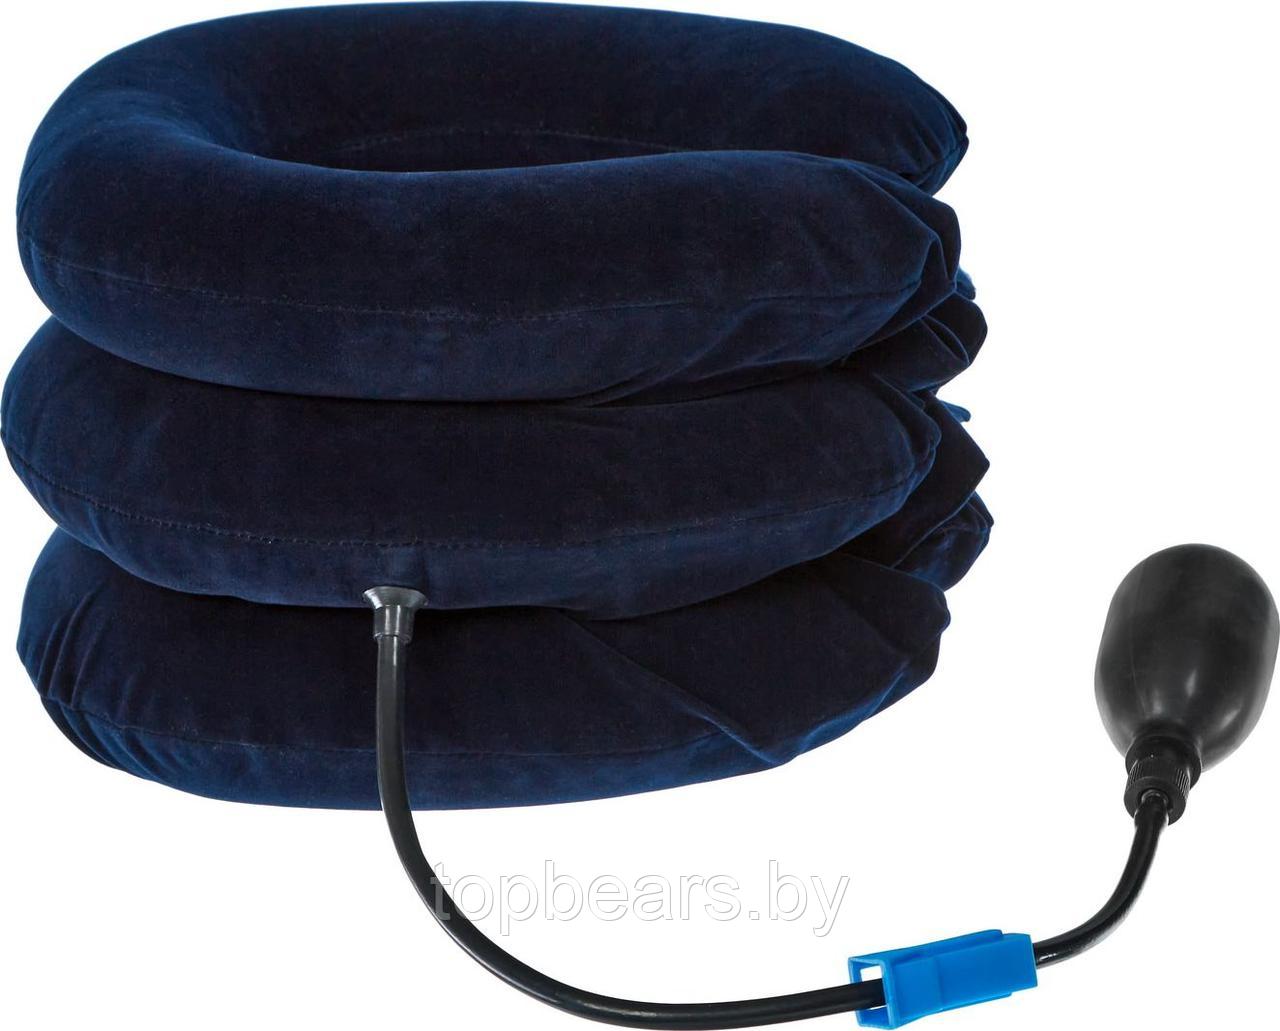 Воротник массажный надувной, синий, фото 1